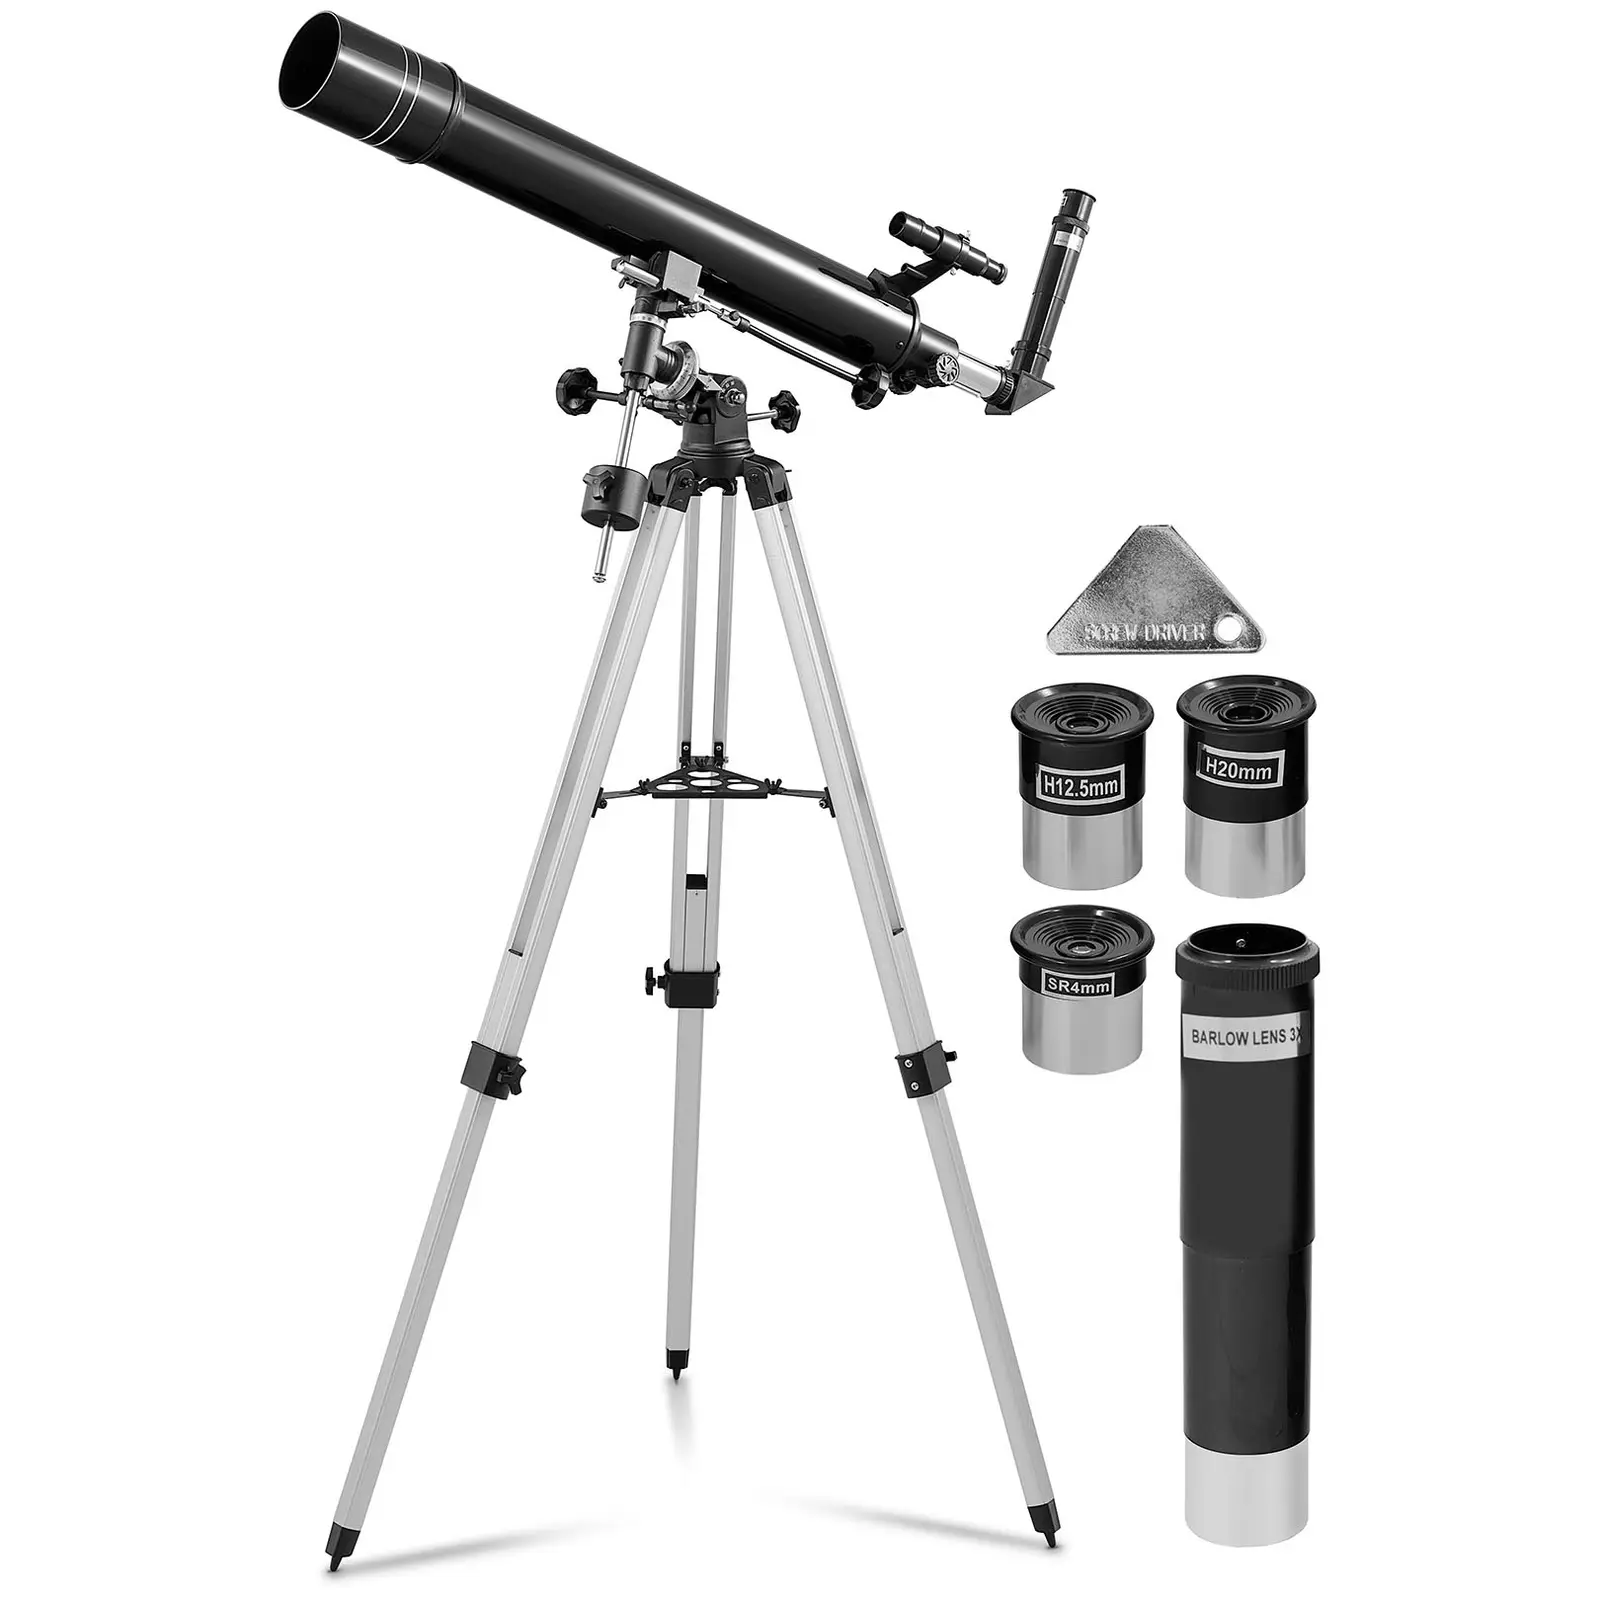 Tweedehands telescoop - Ø 80 mm - 900 mm - statief statief